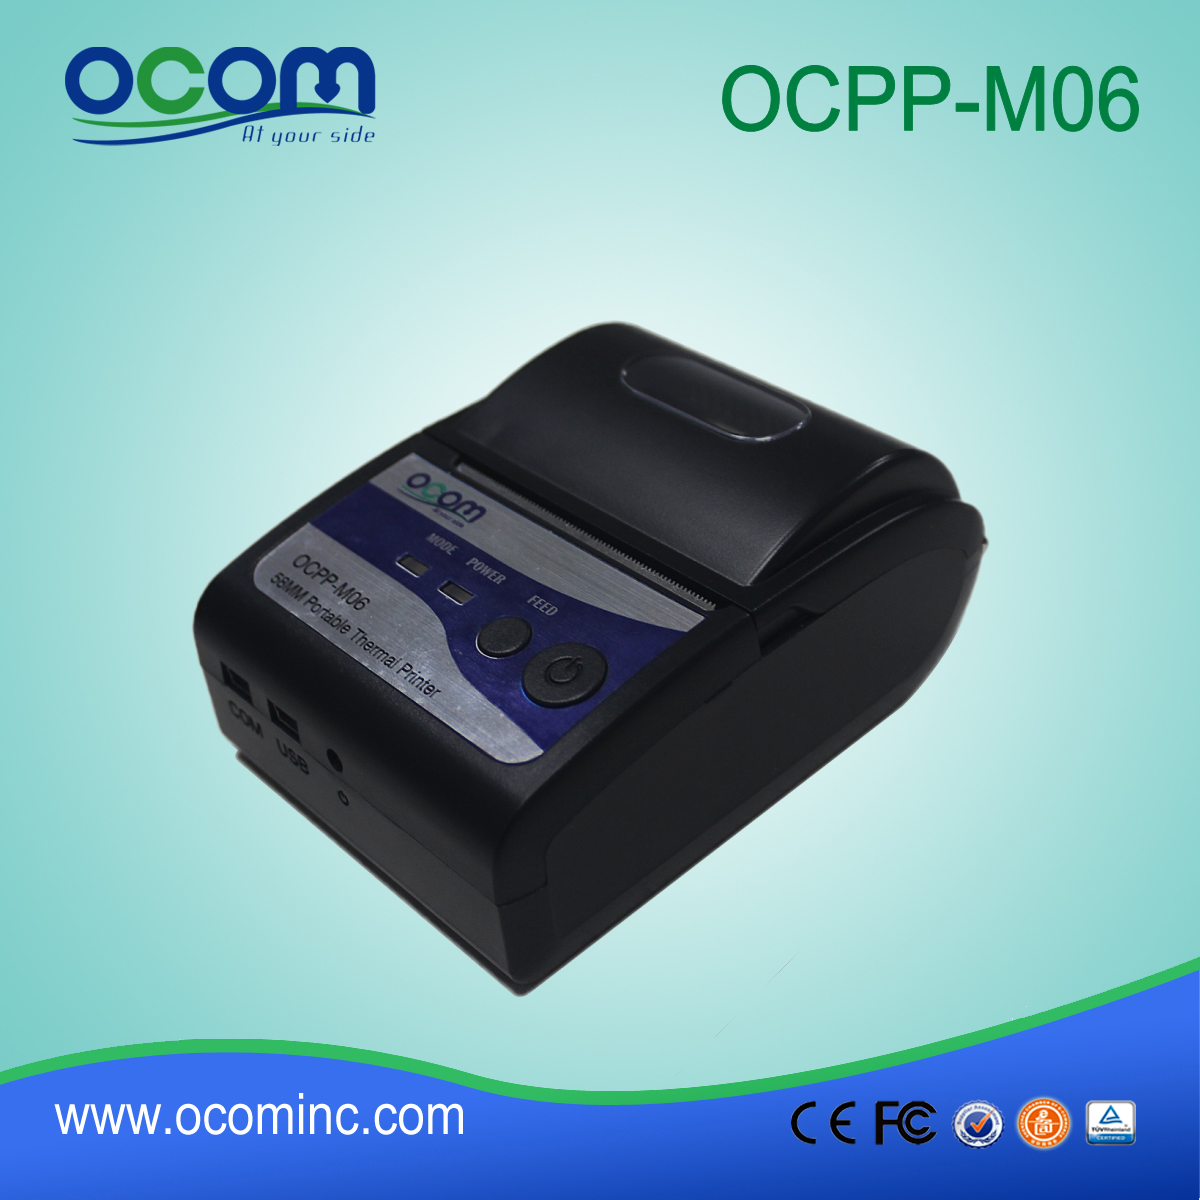 OCPP-M06：中国工厂58毫米蓝牙打印机，蓝牙打印机POS